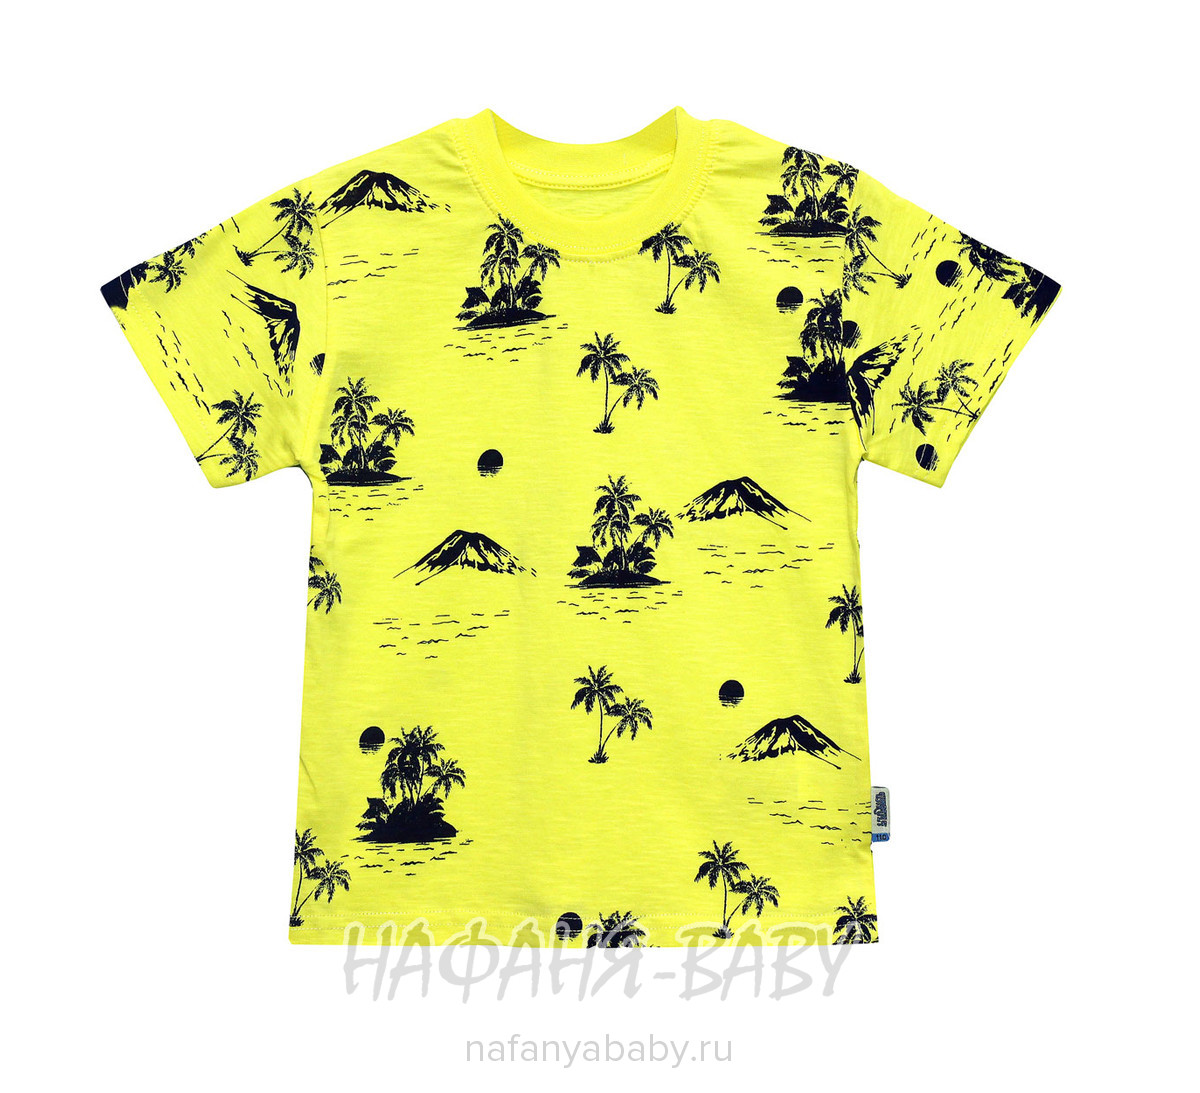 Детская футболка UNRULY арт: 2977, 5-9 лет, цвет желтый, оптом Турция